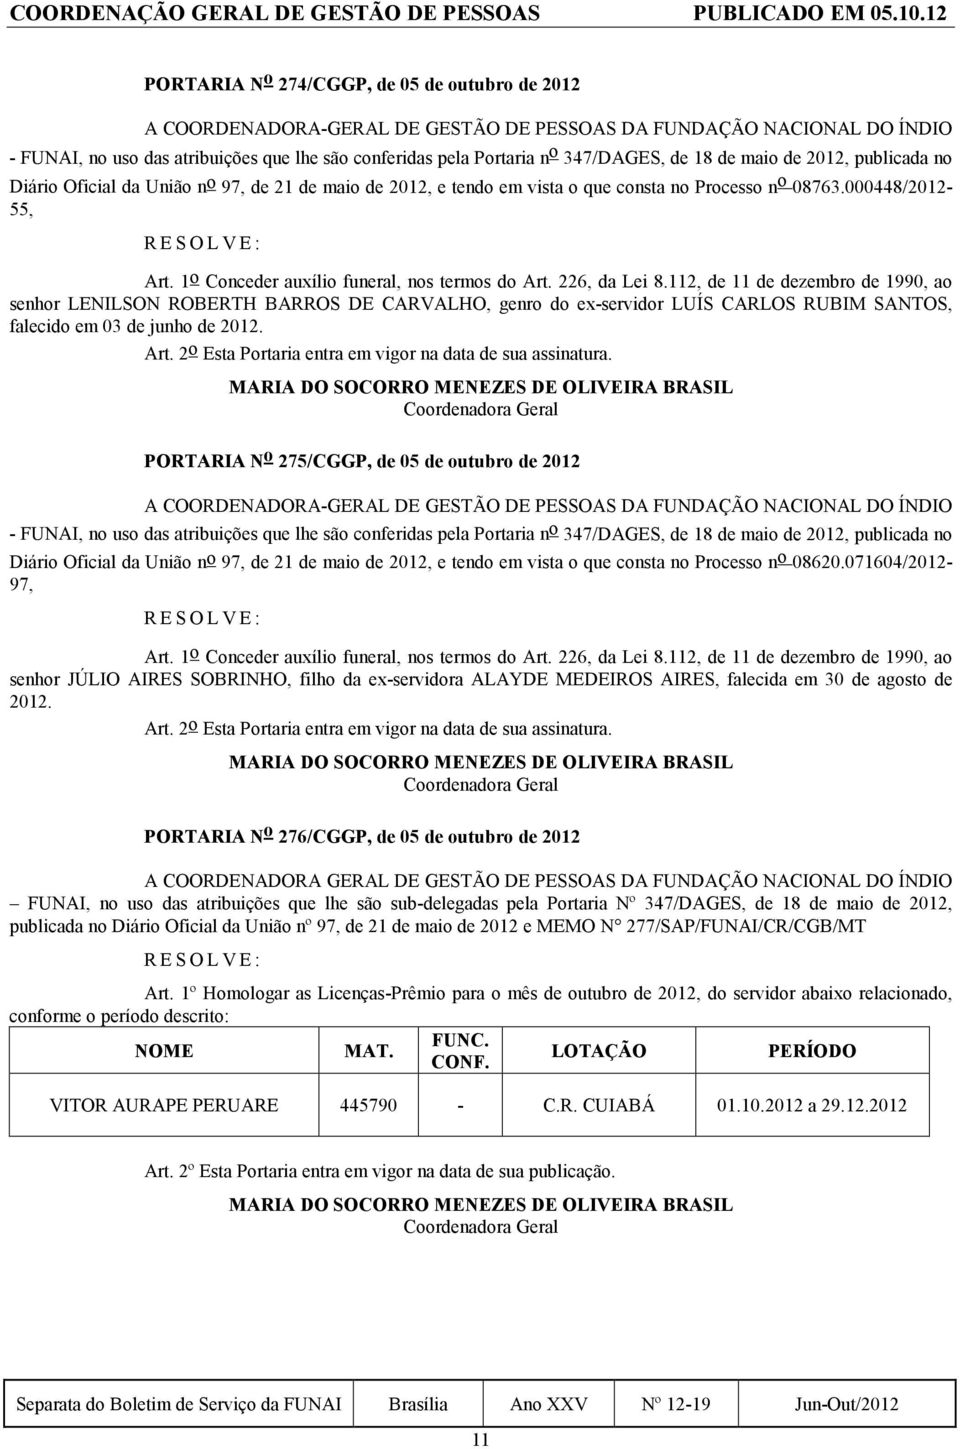 347/DAGES, de 18 de maio de 2012, publicada no Diário Oficial da União n o 97, de 21 de maio de 2012, e tendo em vista o que consta no Processo n o 08763.000448/2012-55, Art.